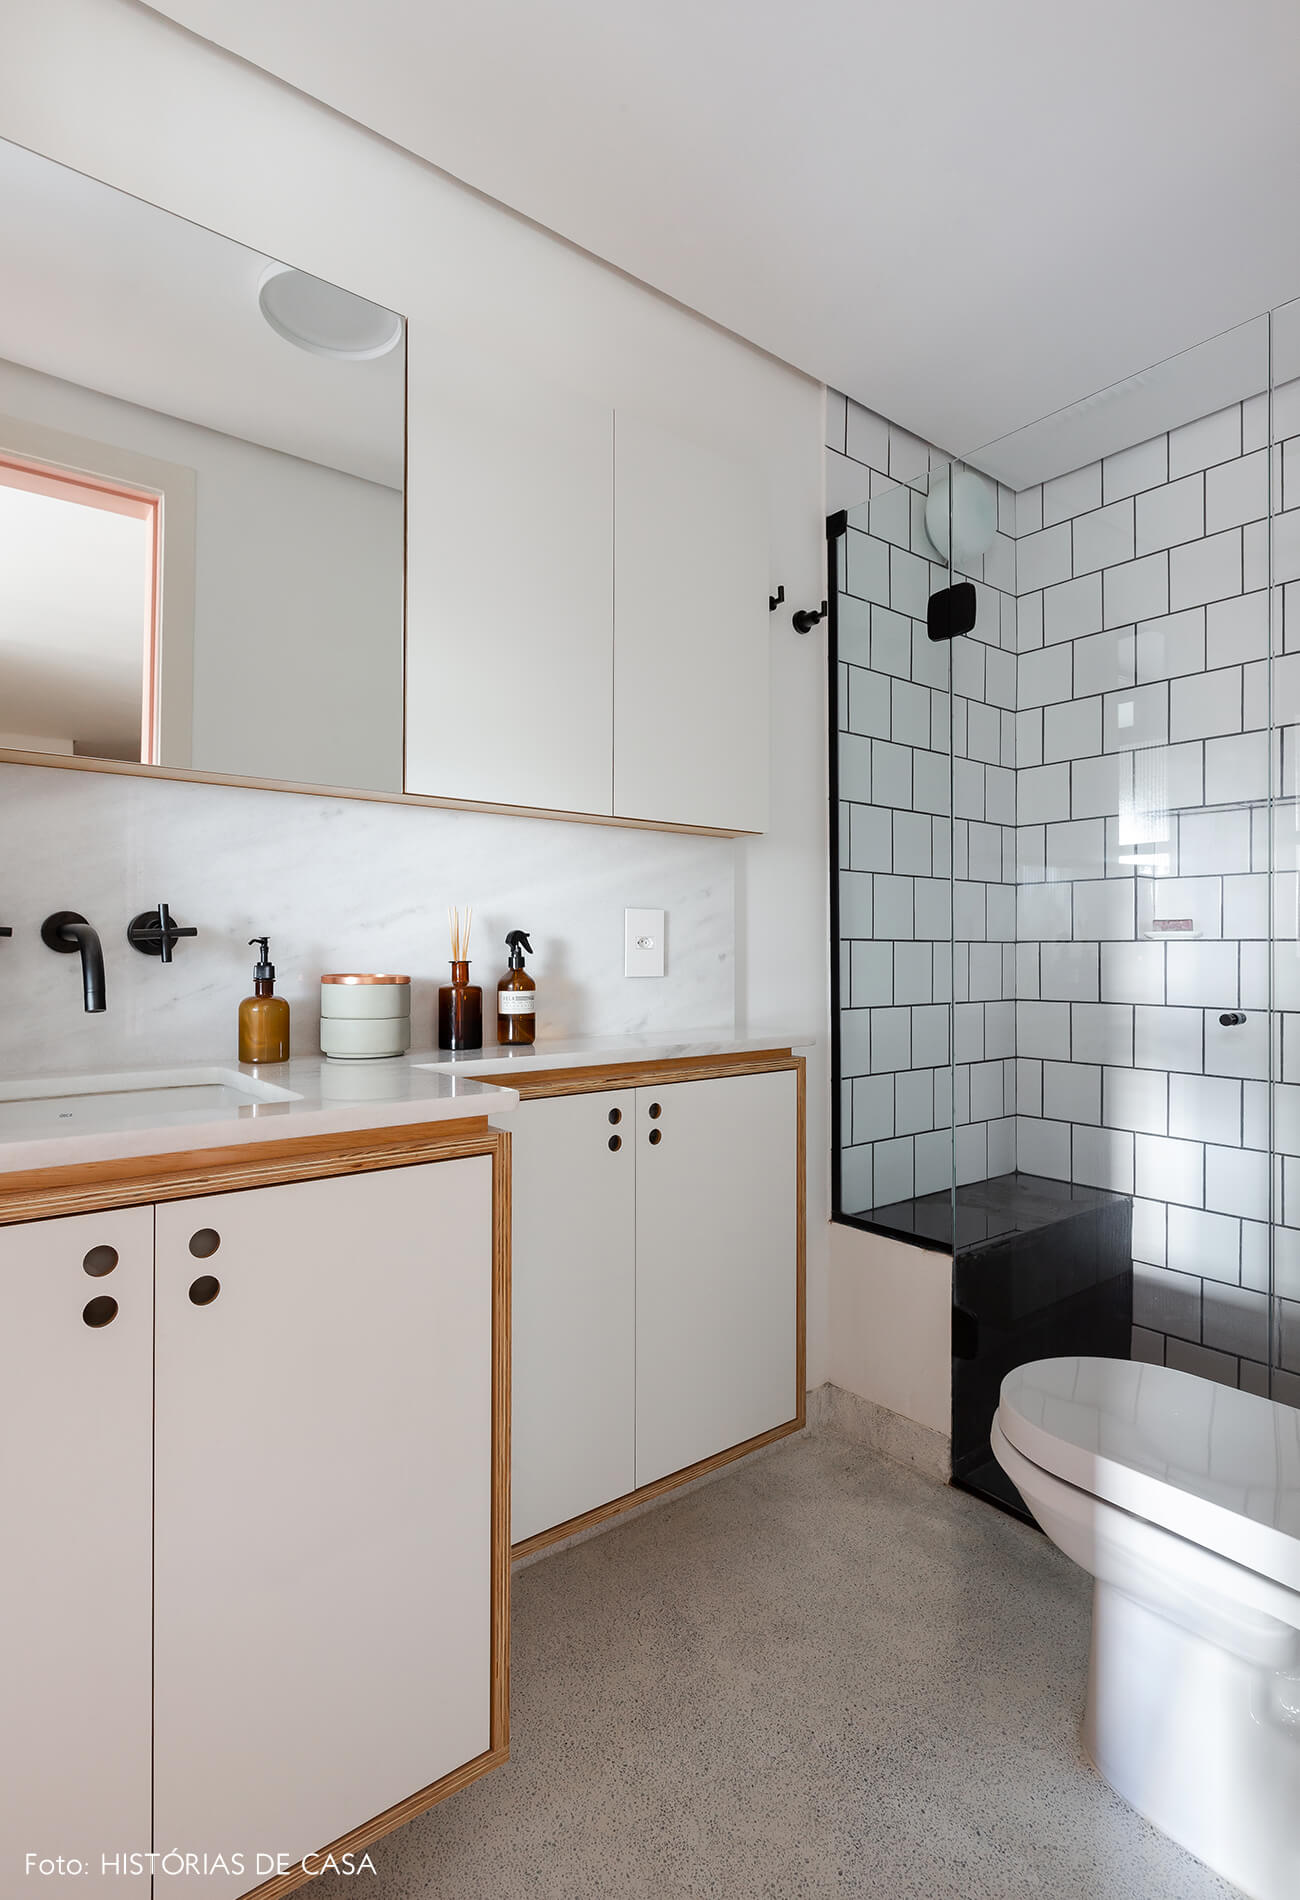 Banheiro em apartamento pequeno com revestimentos brancos